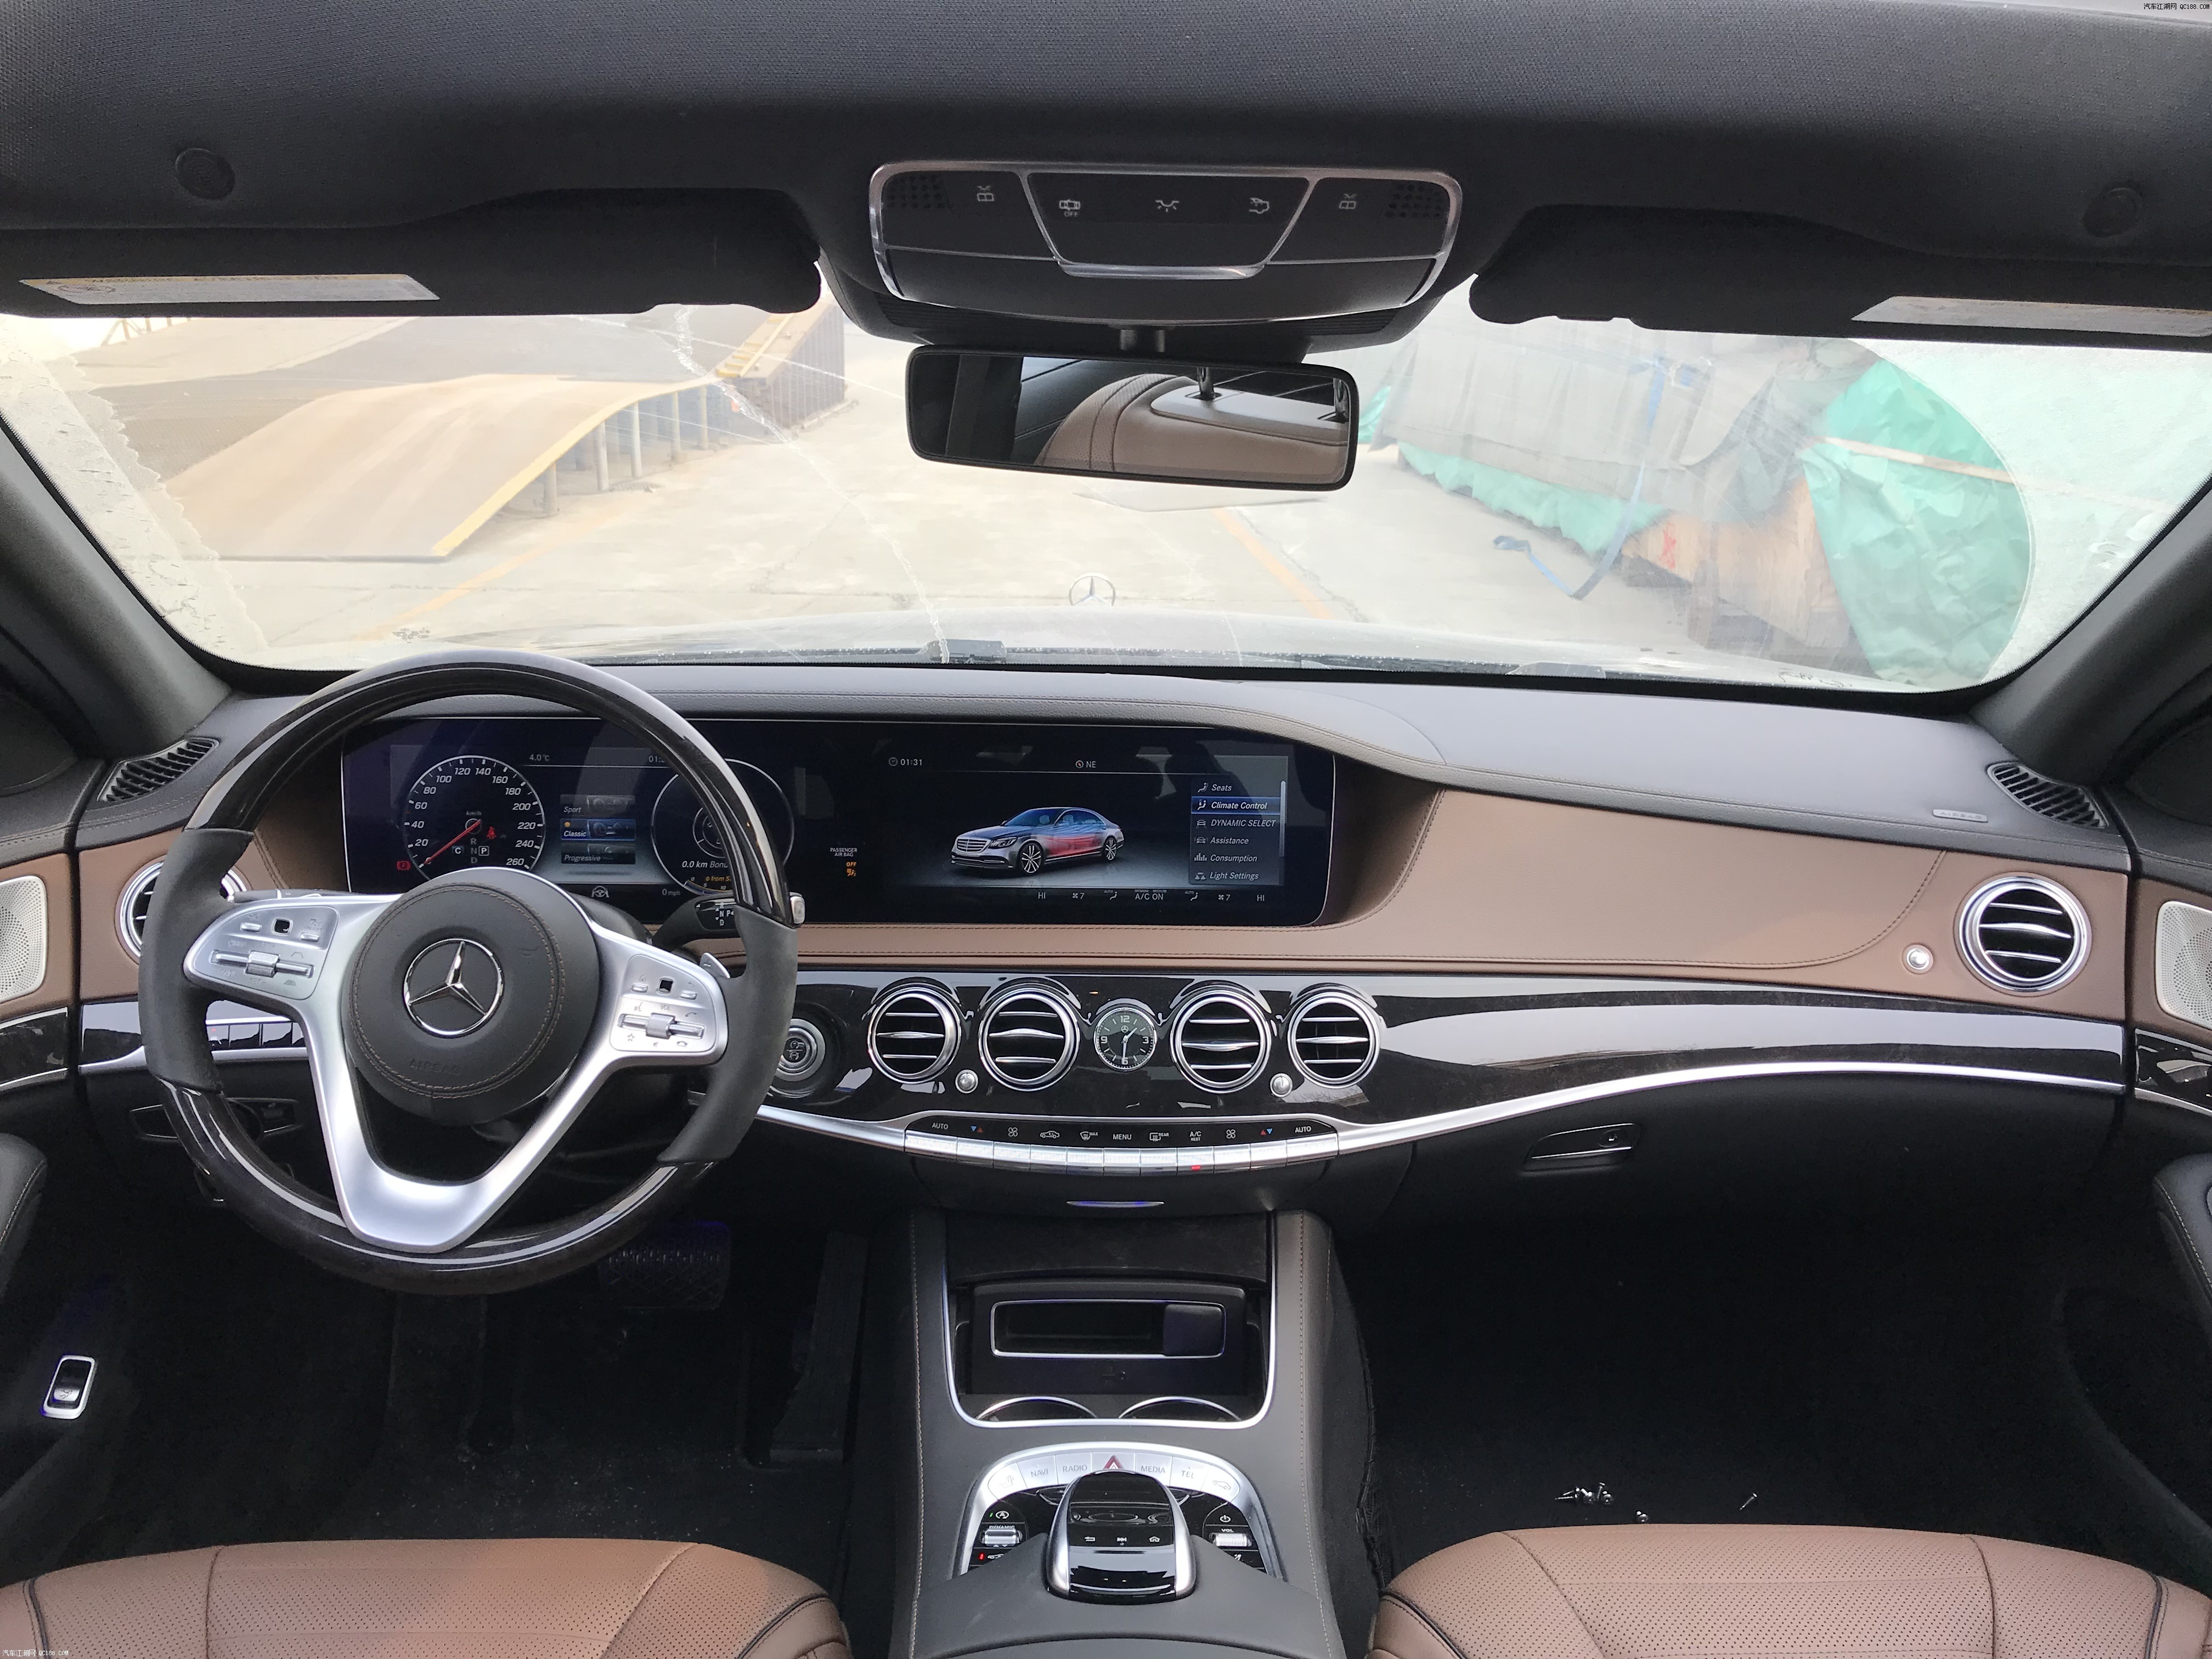 2018款奔驰S560加版内饰整体运用双色配色方案